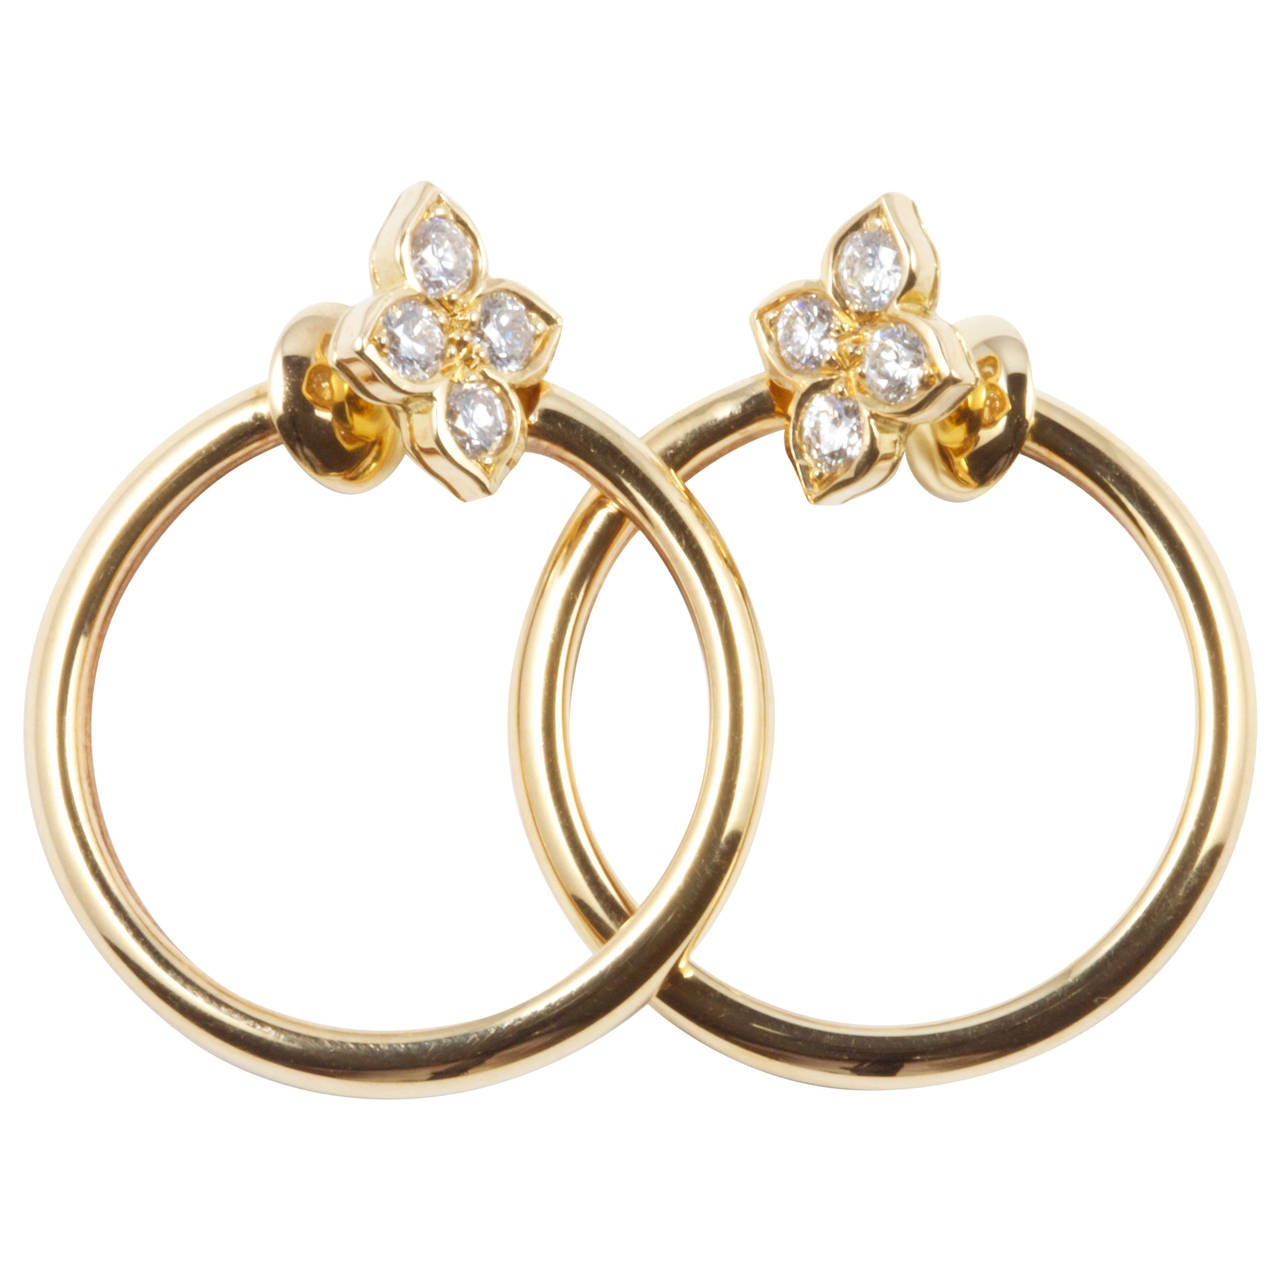 Cartier Diamond Gold Earrings